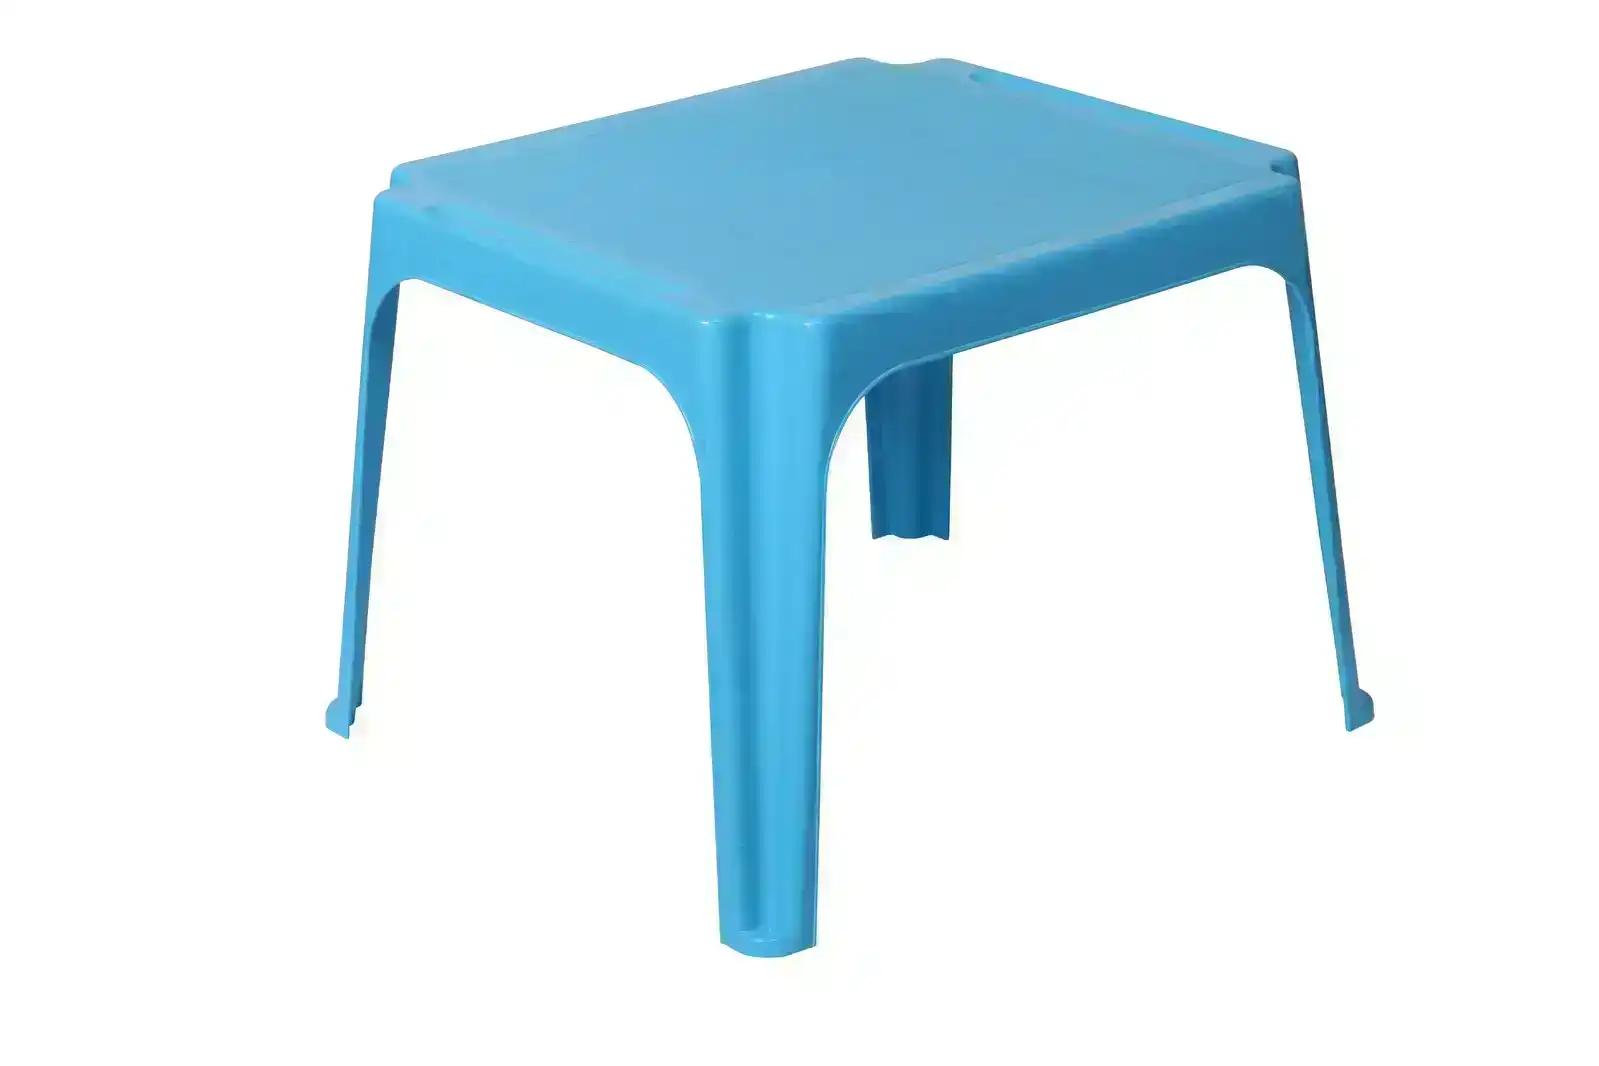 Tuff Play 60cm Tinker Table Kids Plastic Desk Furniture Indoor/Outdoor 2-6y Aqua